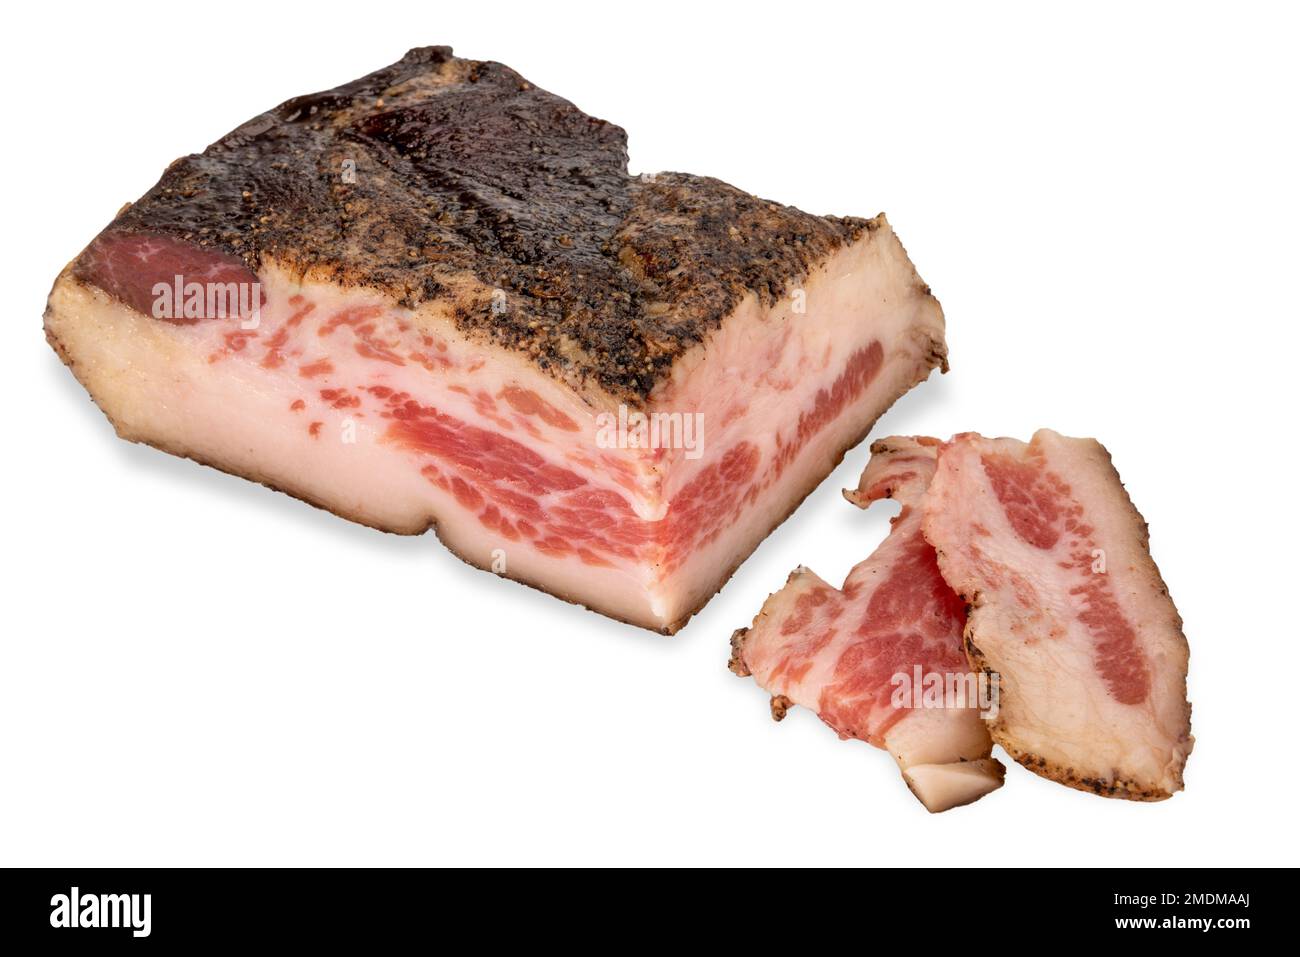 La chouette de porc de Guanciale isolée sur blanc, c'est une viande de porc préparée avec une coupe de viande de joue de porc. Ingrédient pour les pâtes amatriciana et carbonara - CLI Banque D'Images